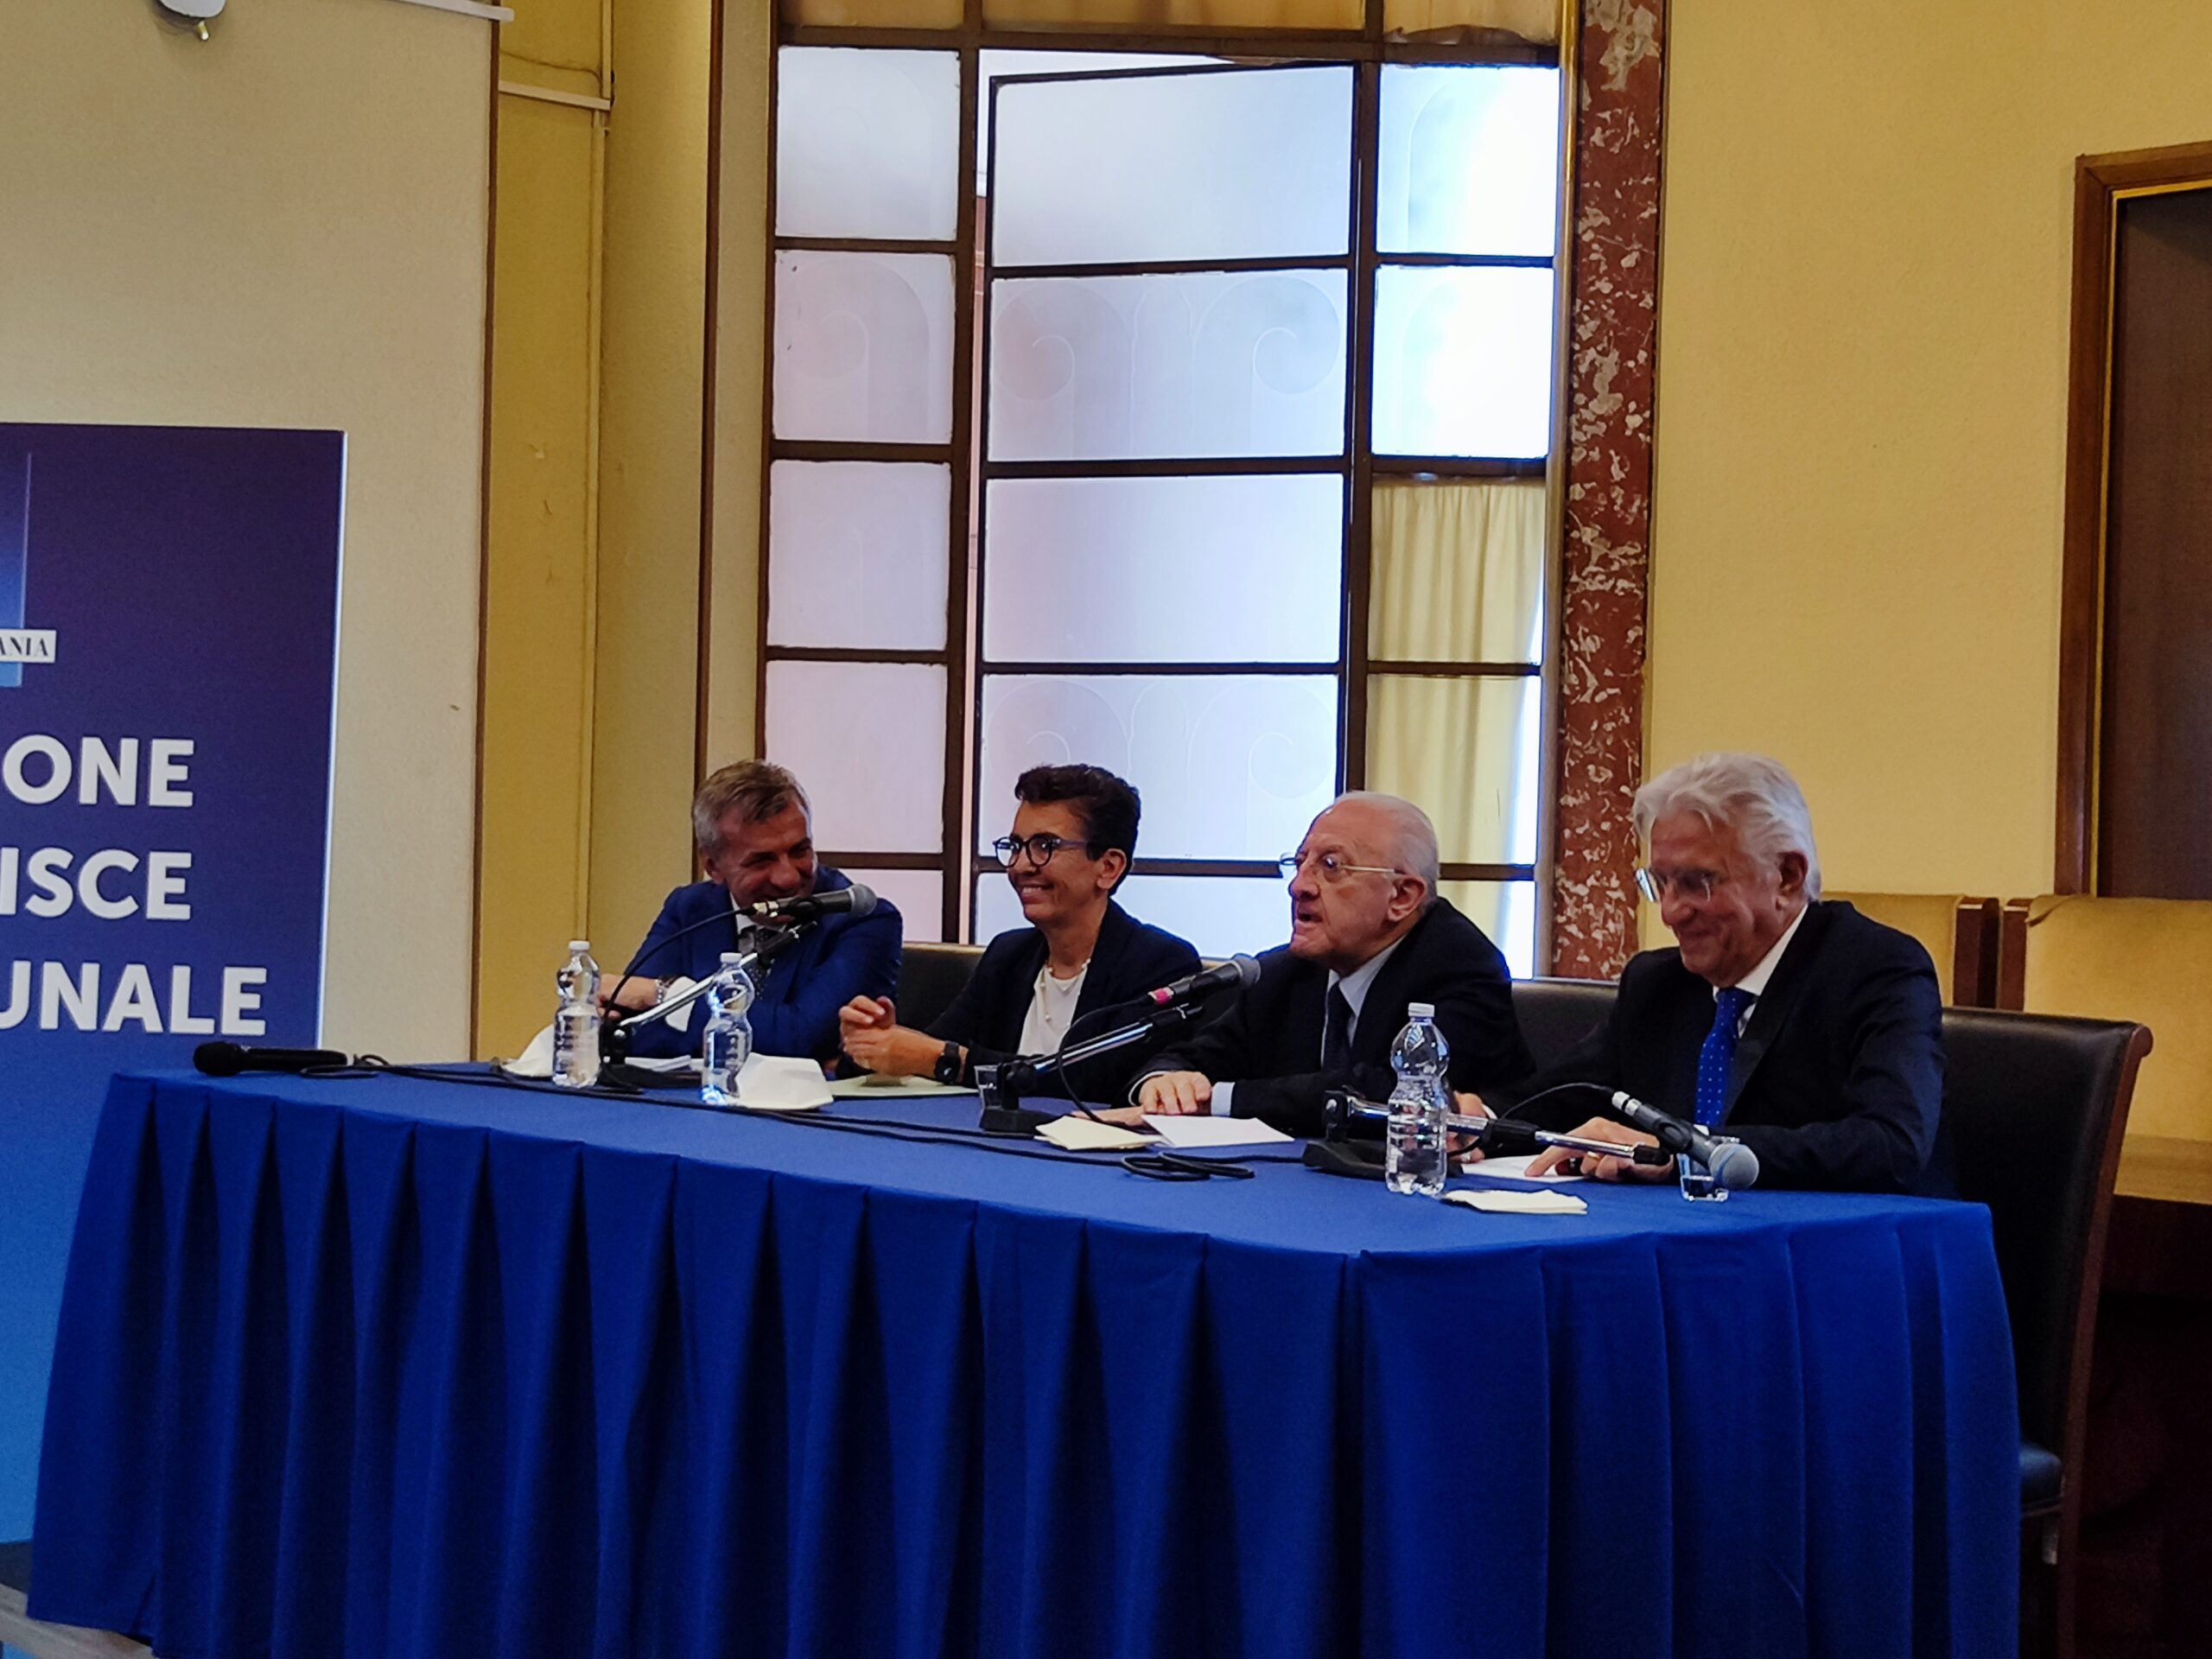 Ex tribunale di Salerno, firmato protocollo d’intesa tra Regione e Demanio. “Rivoluzione urbanistica della zona est”